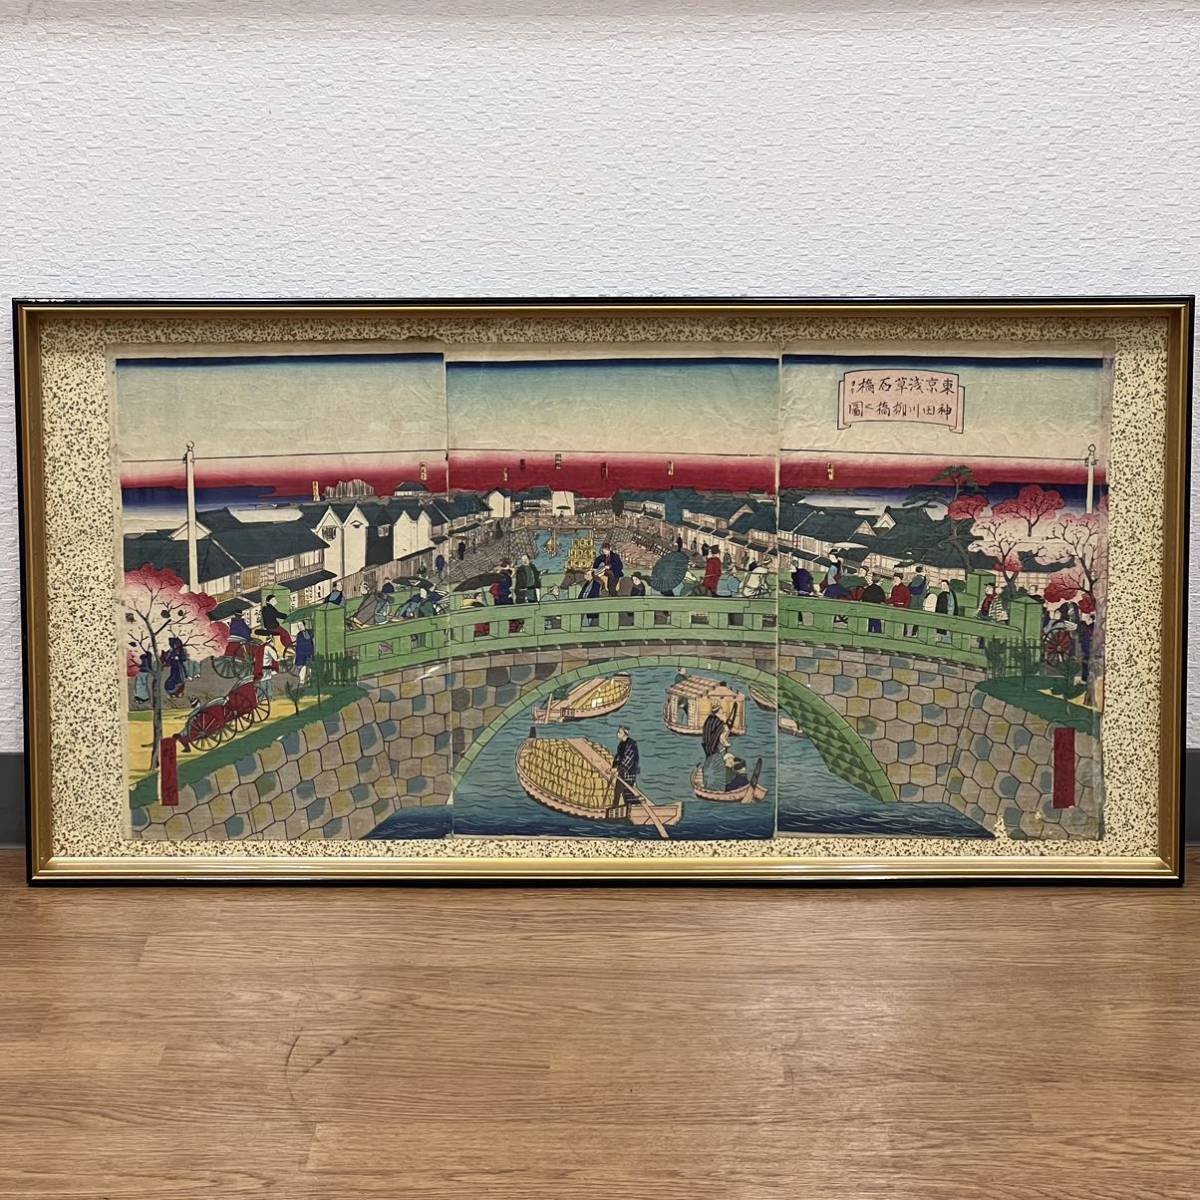 الجيل الثالث من أوتاغاوا هيروشيغي كايكا-إي رسم توضيحي لجسر طوكيو أساكوسا إيشيباشي ونهر كاندا ياناجيباشي لوحة ثلاثية كبيرة الحجم من نيشيكي-إي فترة ميجي ازدهار الحضارة طباعة أوكييو-إي على الخشب, تلوين, أوكييو إي, مطبعة, صورة المكان الشهير